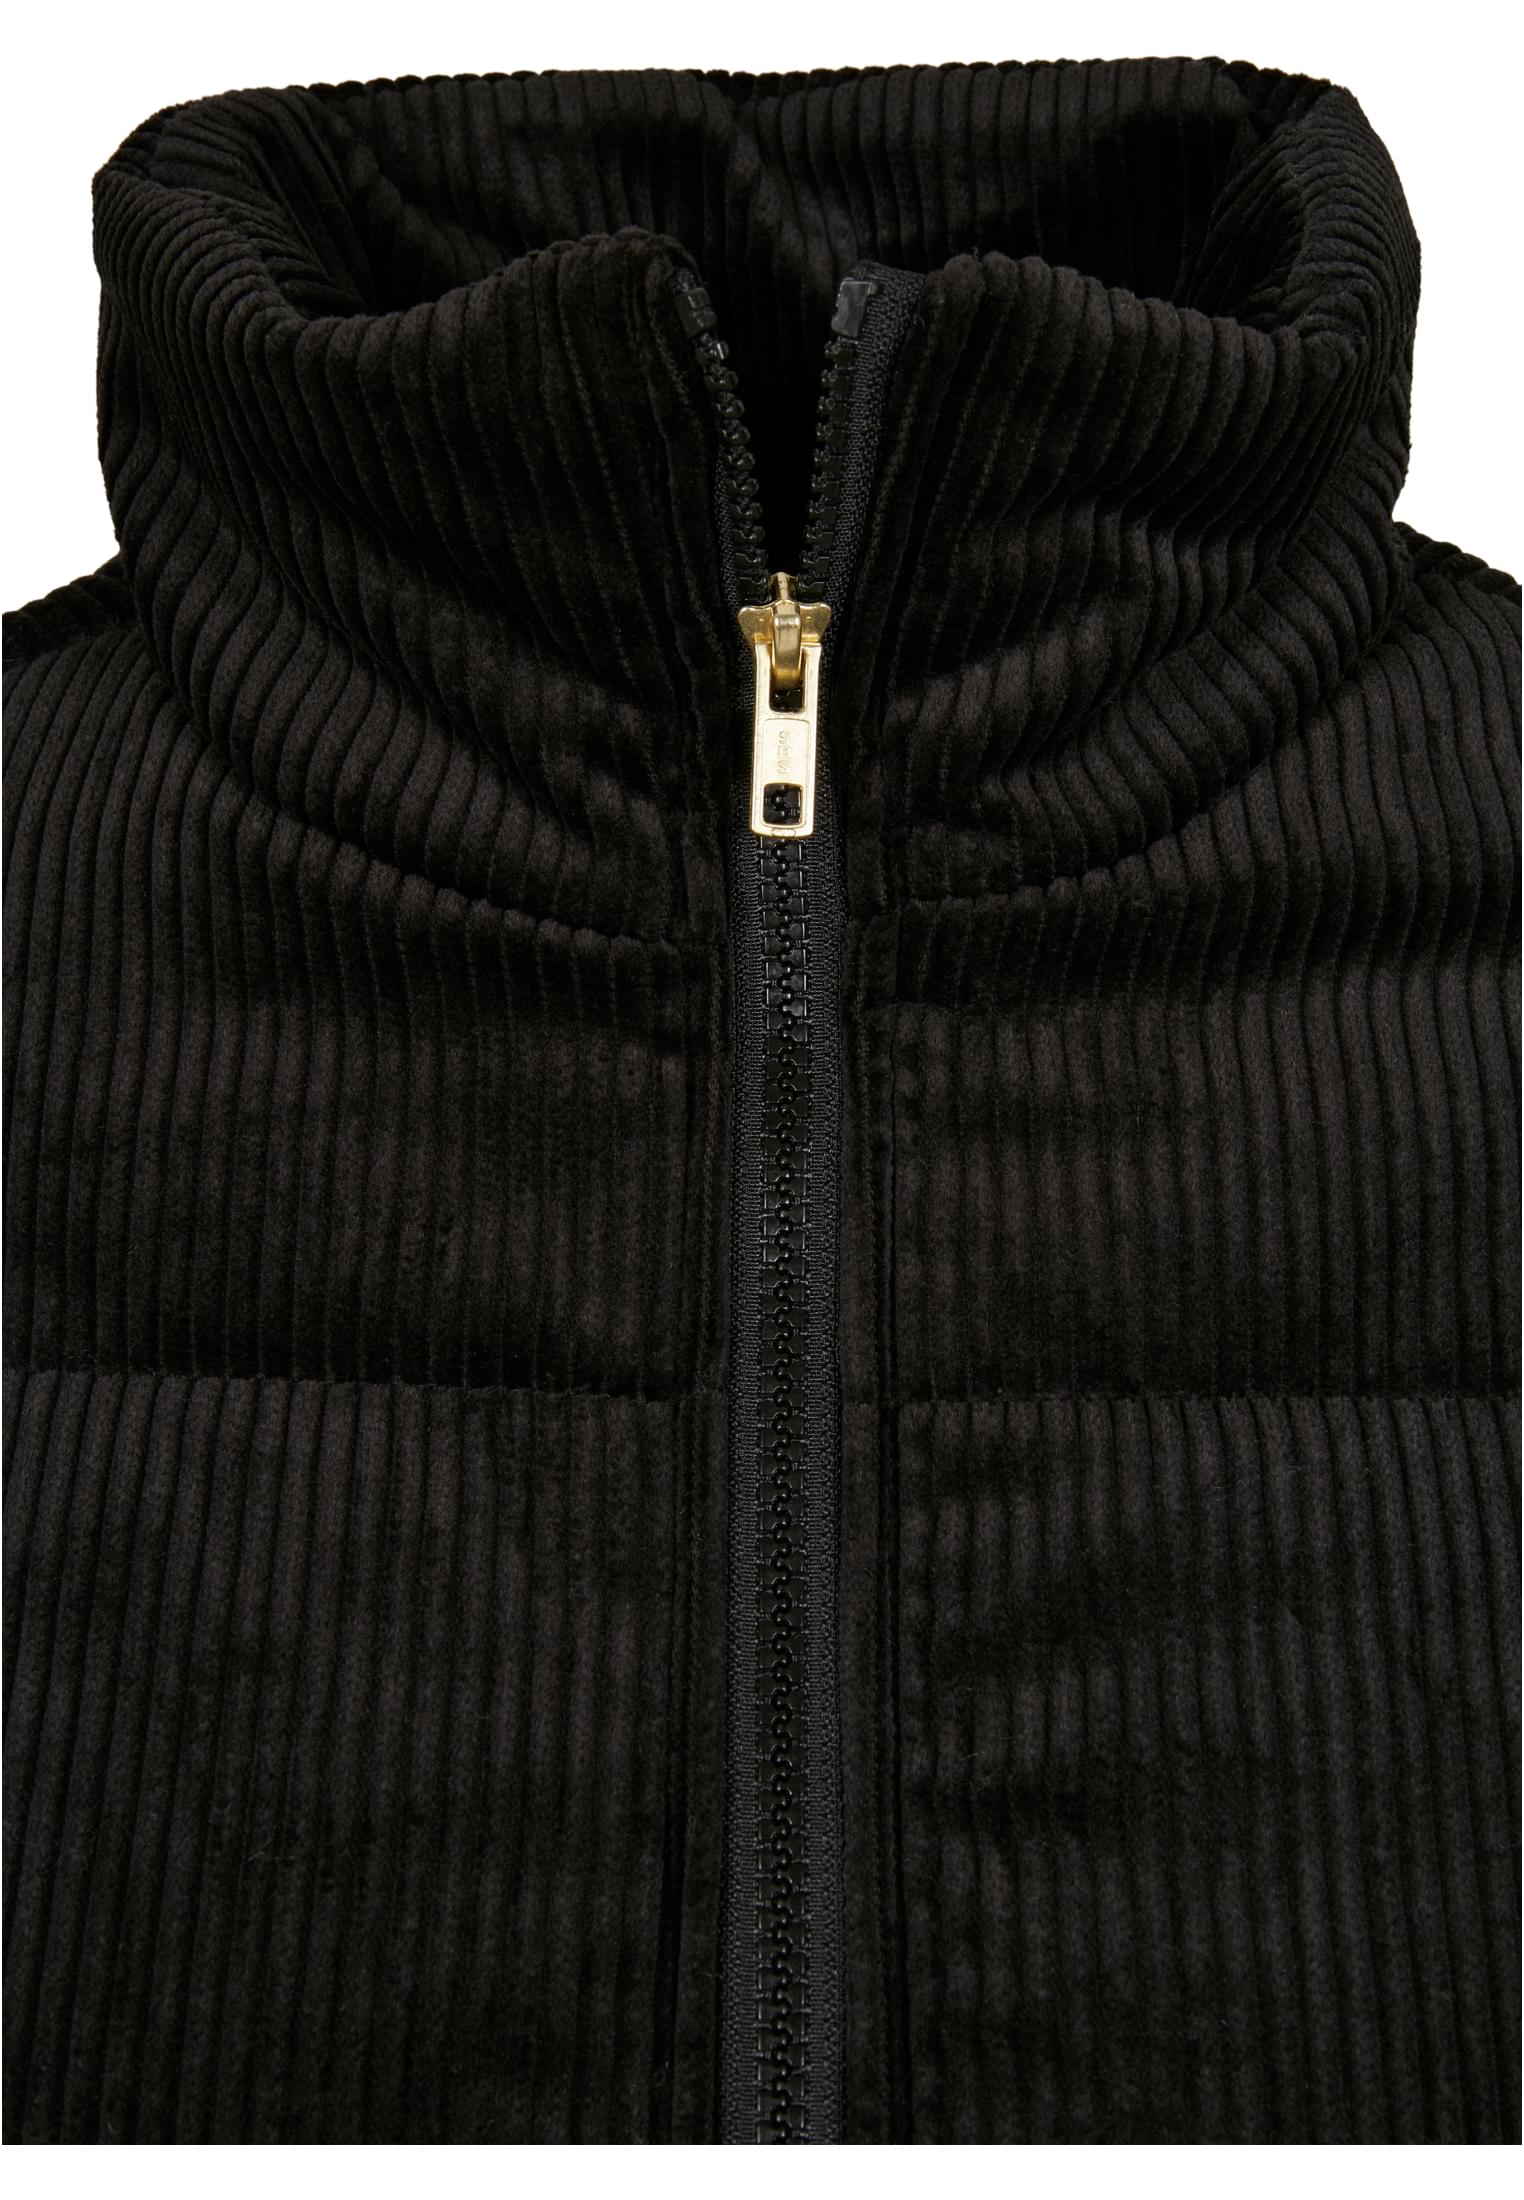 Curvy Ladies Corduroy Puffer Jacket in Farbe black